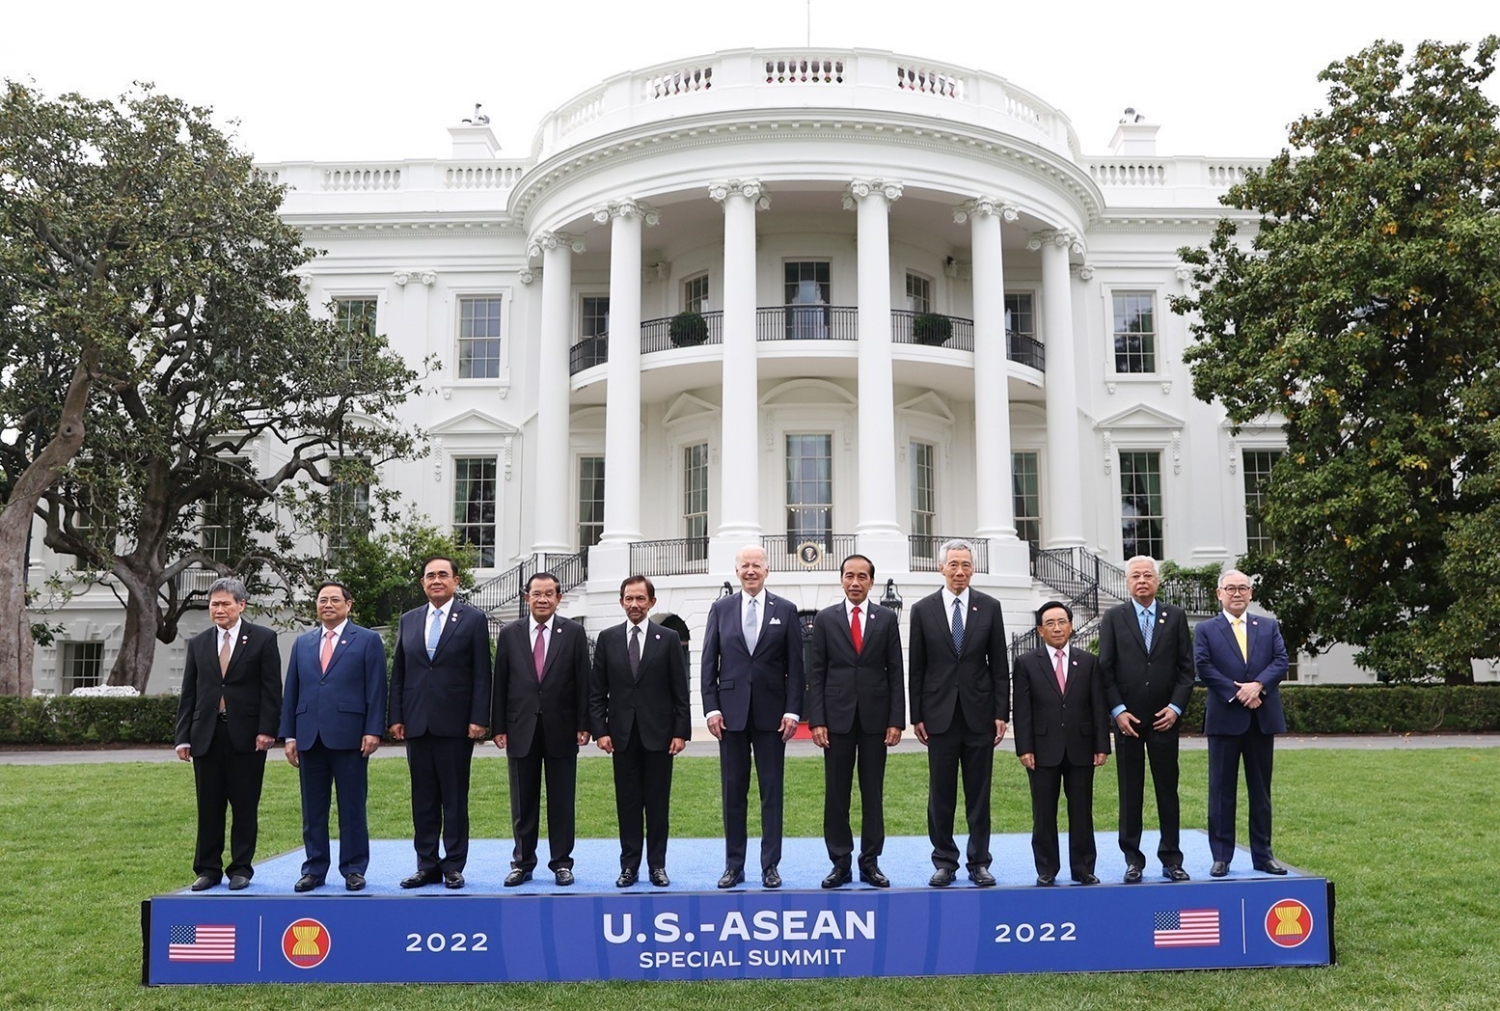 Tiếp cận chính sách của Mỹ đối với khu vực Đông Nam Á dưới thời kỳ chính quyền Tổng thống Mỹ Giô Bai-đơn